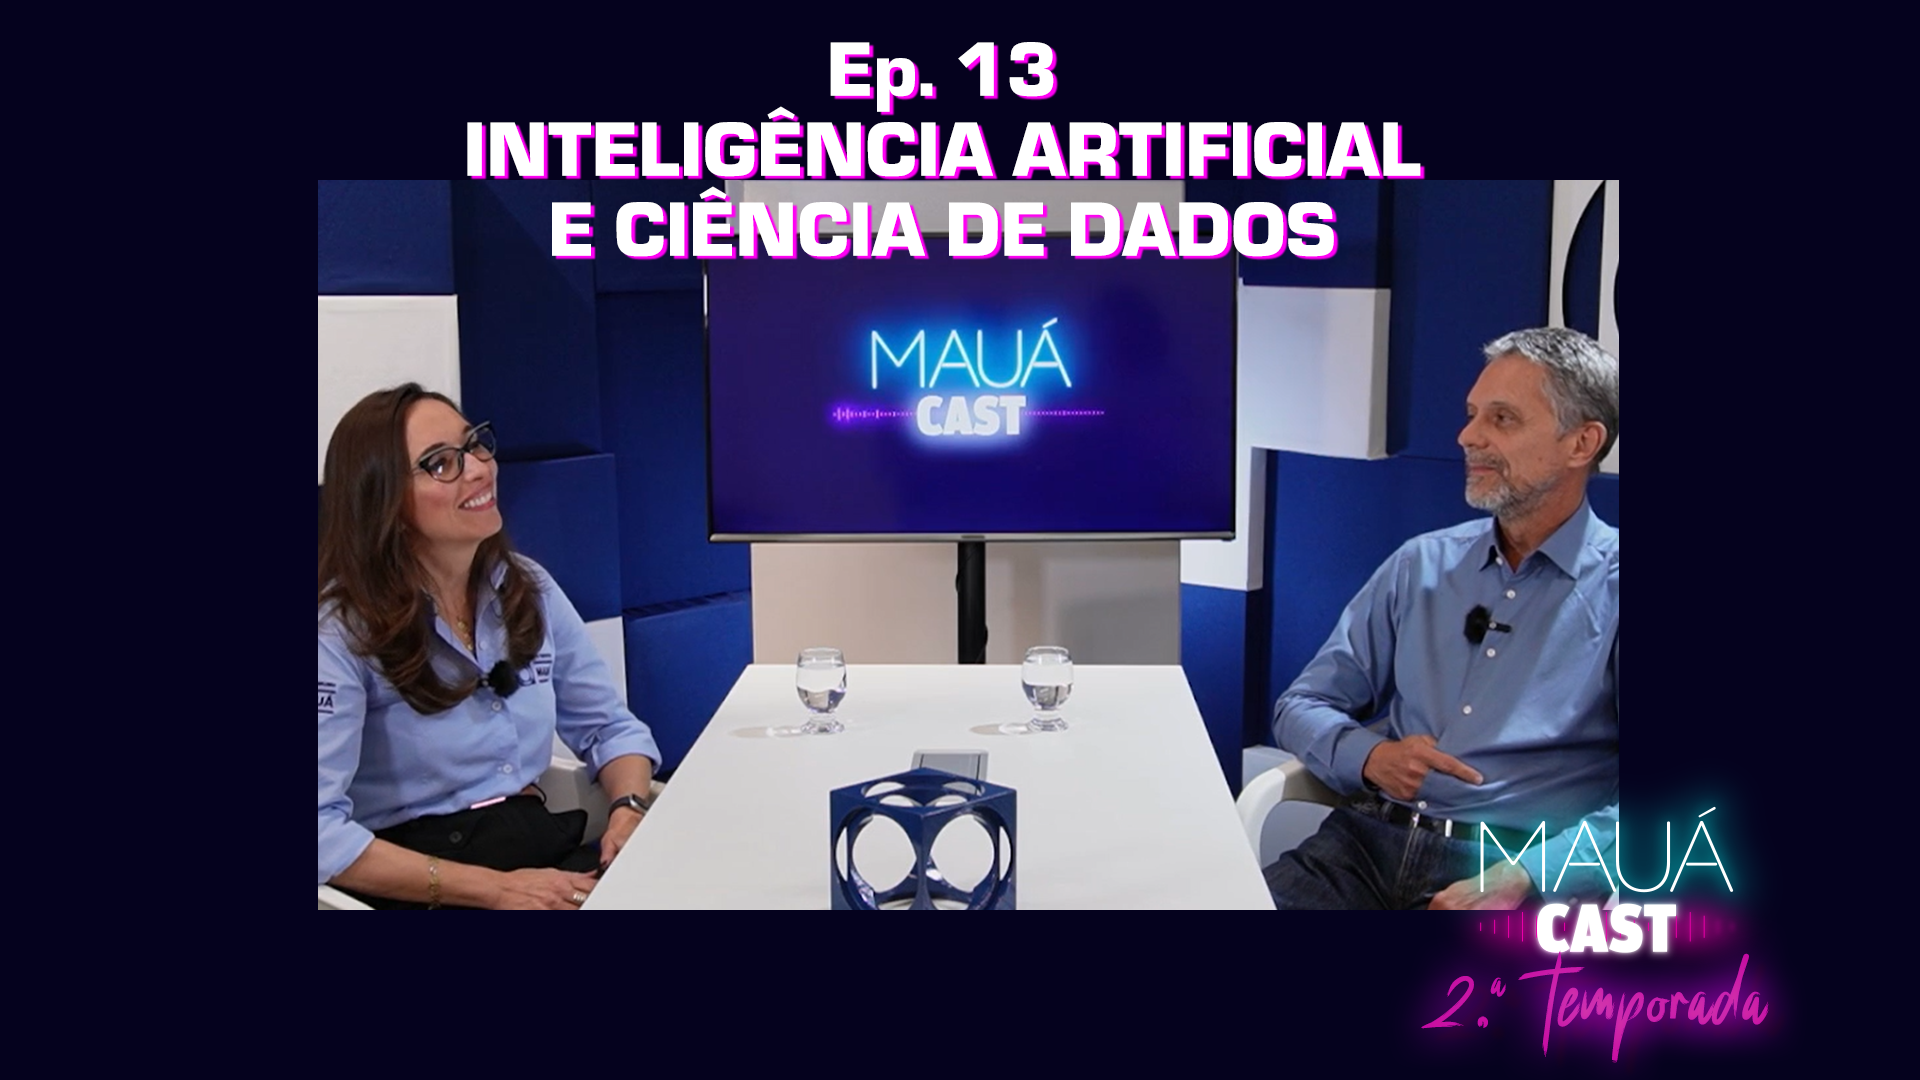 Ep. 13 - Inteligência Artificial e Ciência de Dados | MauáCast - 2.ª temporada